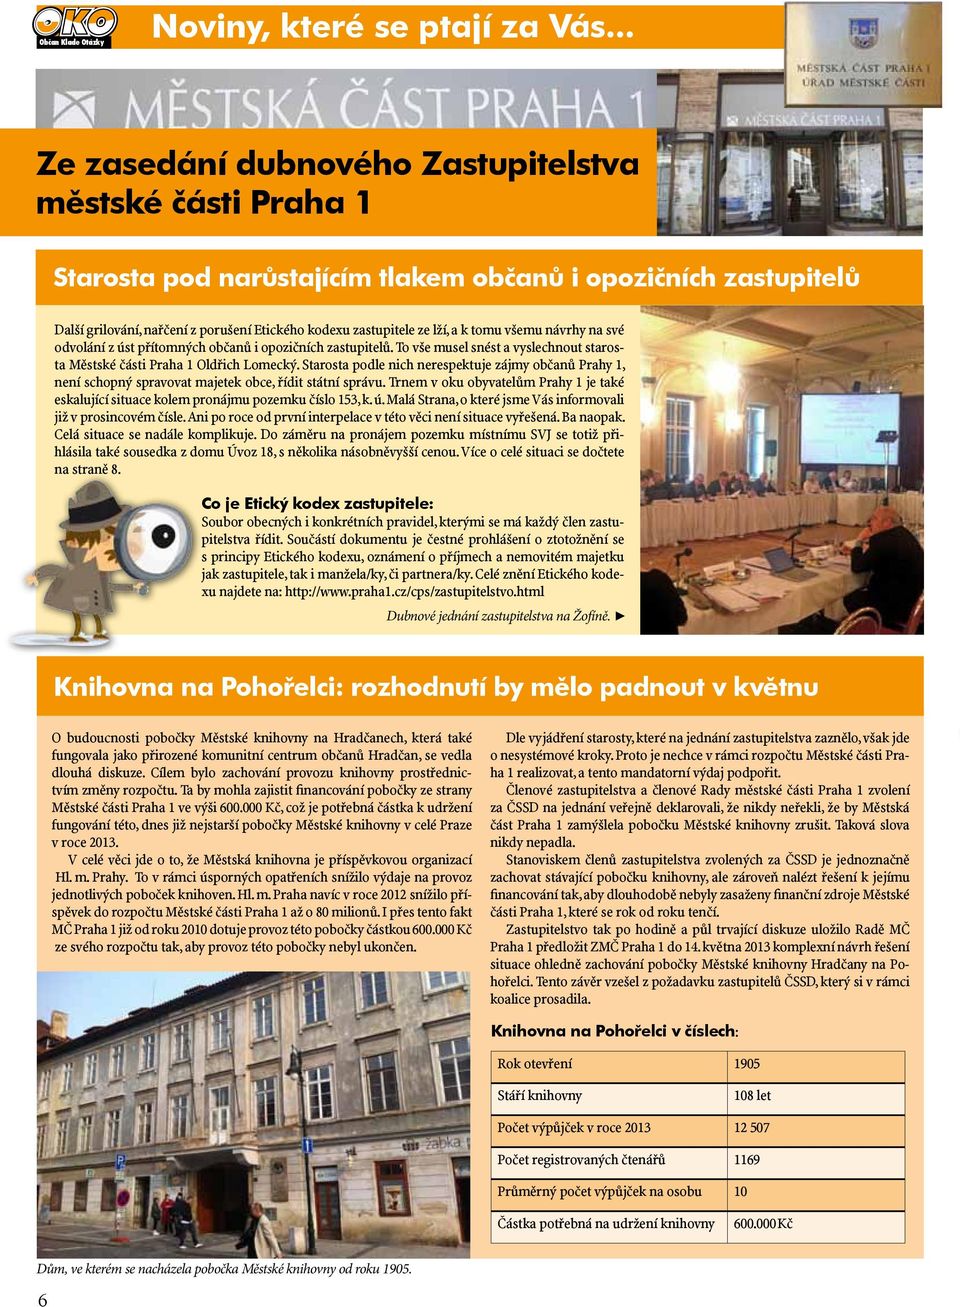 Starosta podle nich nerespektuje zájmy občanů Prahy 1, není schopný spravovat majetek obce, řídit státní správu.